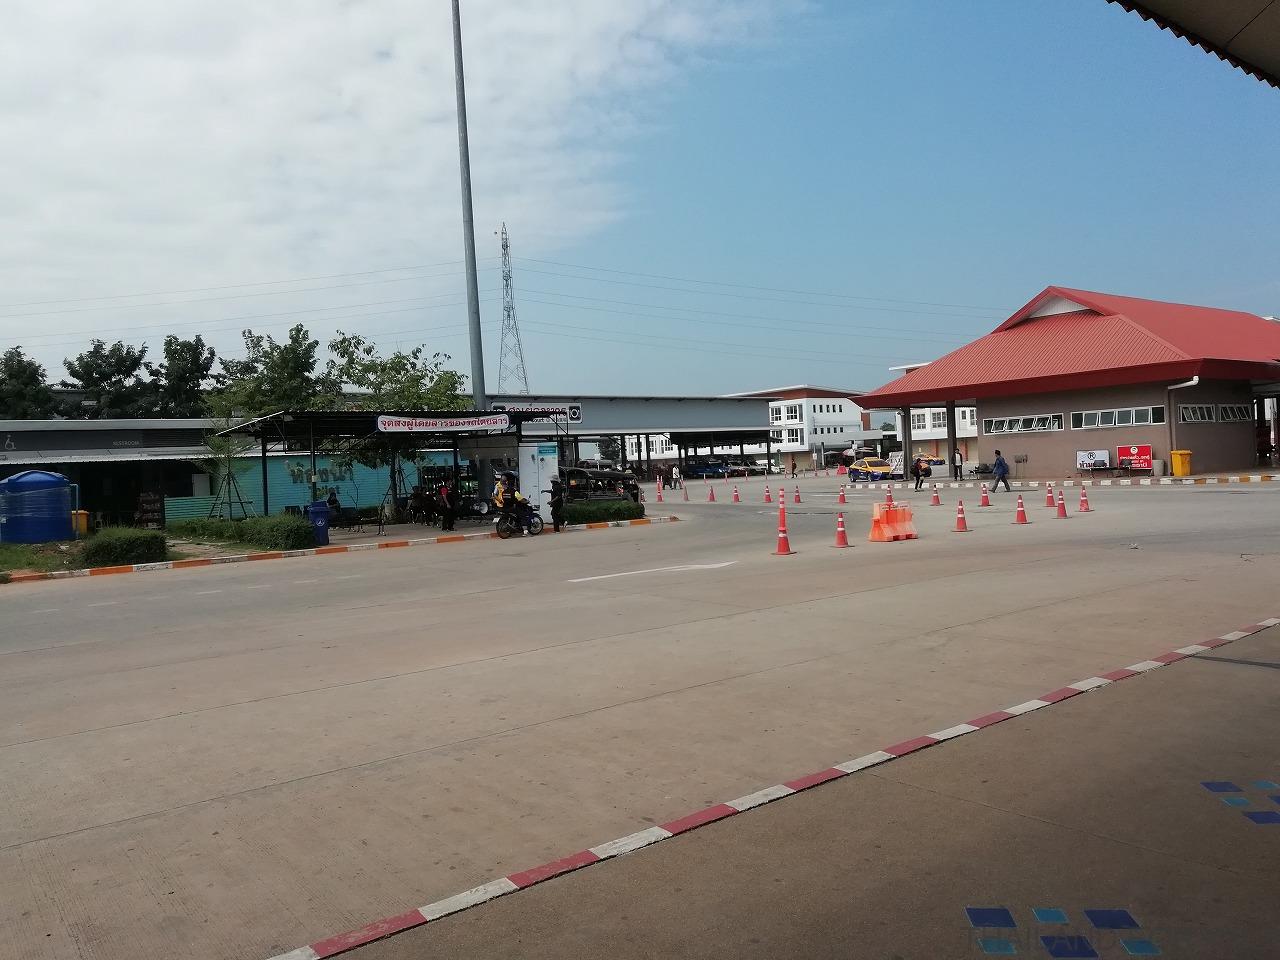 コンケン バスターミナル3 khon kaen bus terminal 3